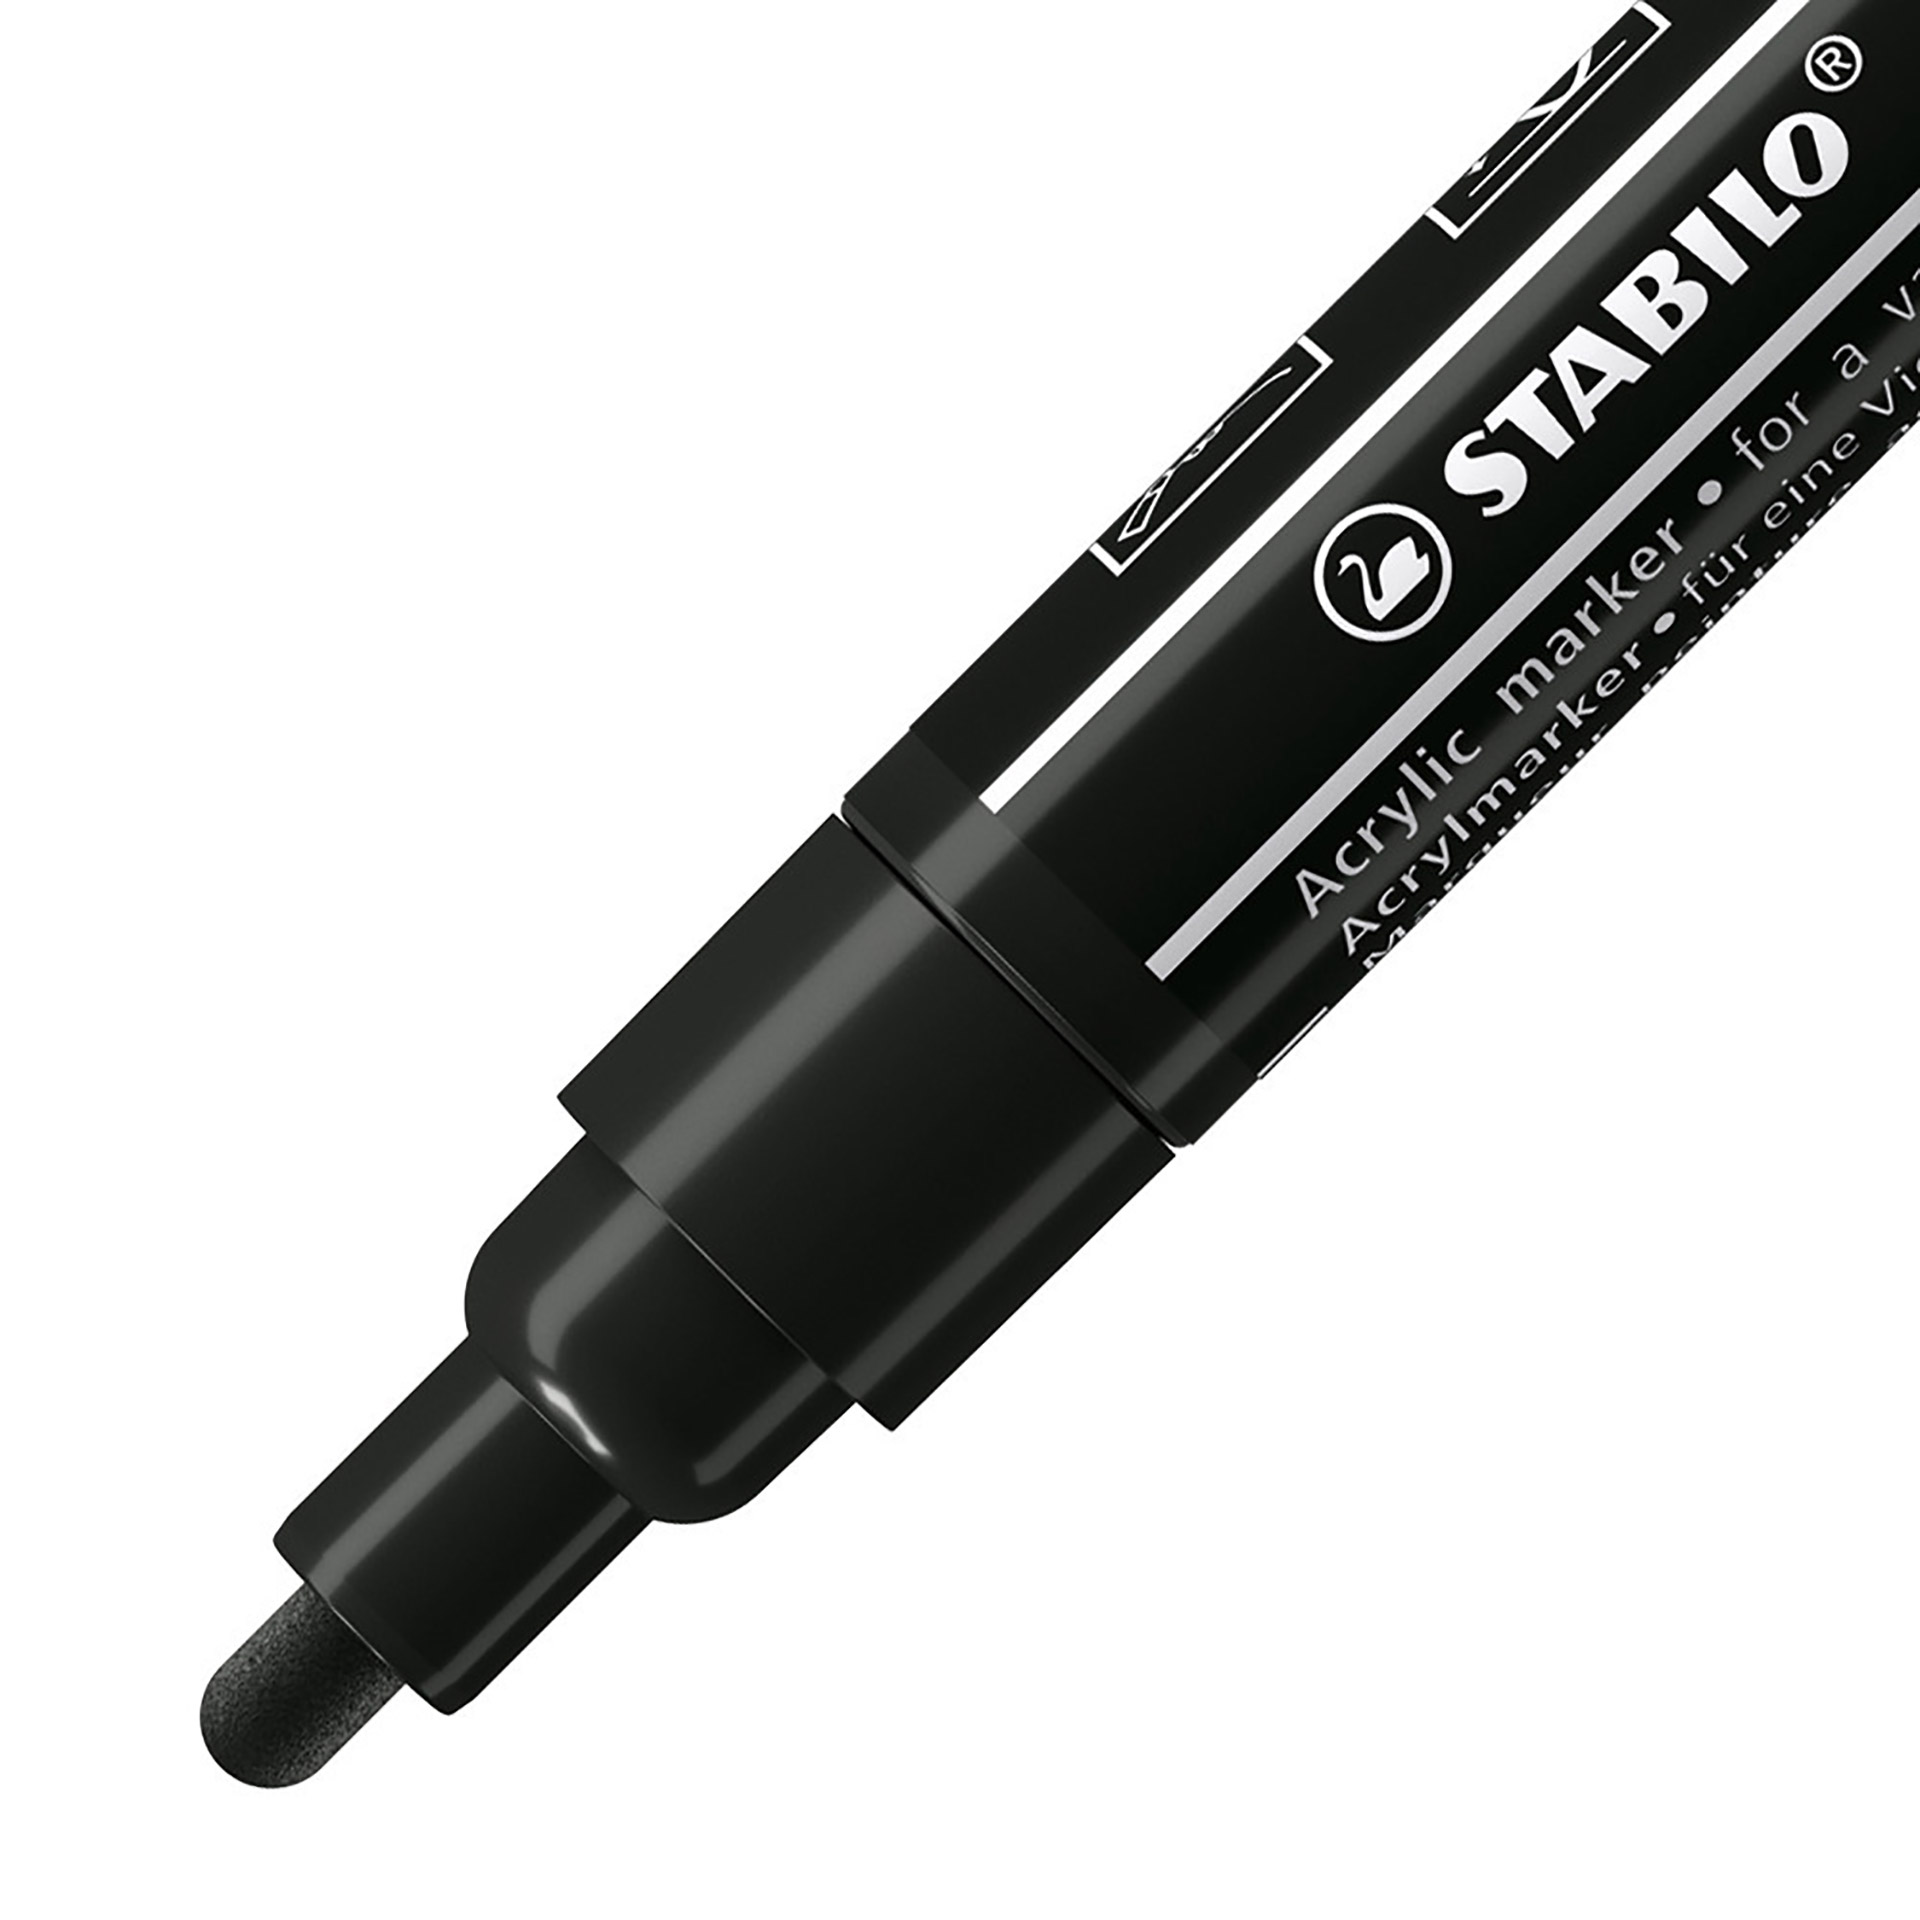 STABILO FREE Acrylic - T300 Punta rotonda 2-3mm - Confezione da 5 - Nero, , large